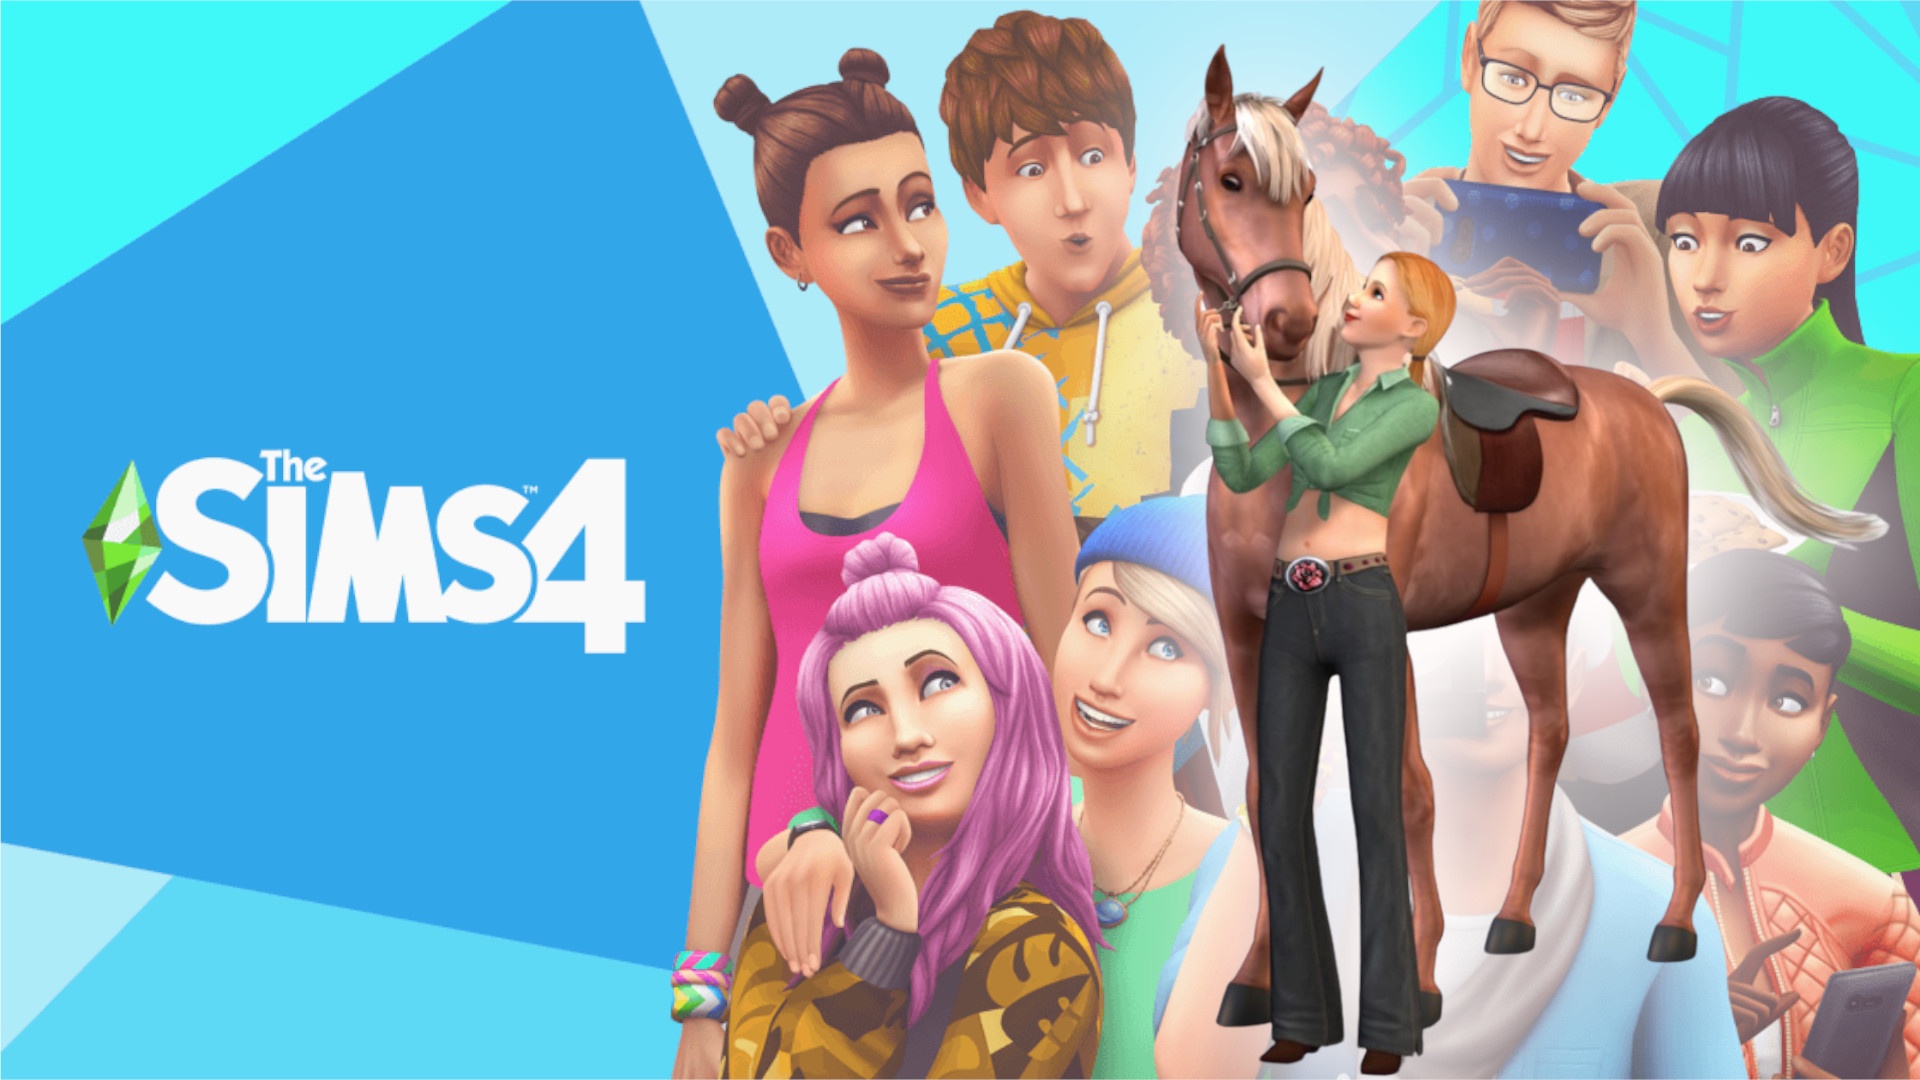 #Sims 4 bald mit Pferden? Keyseller leakt offenbar kommendes Addon